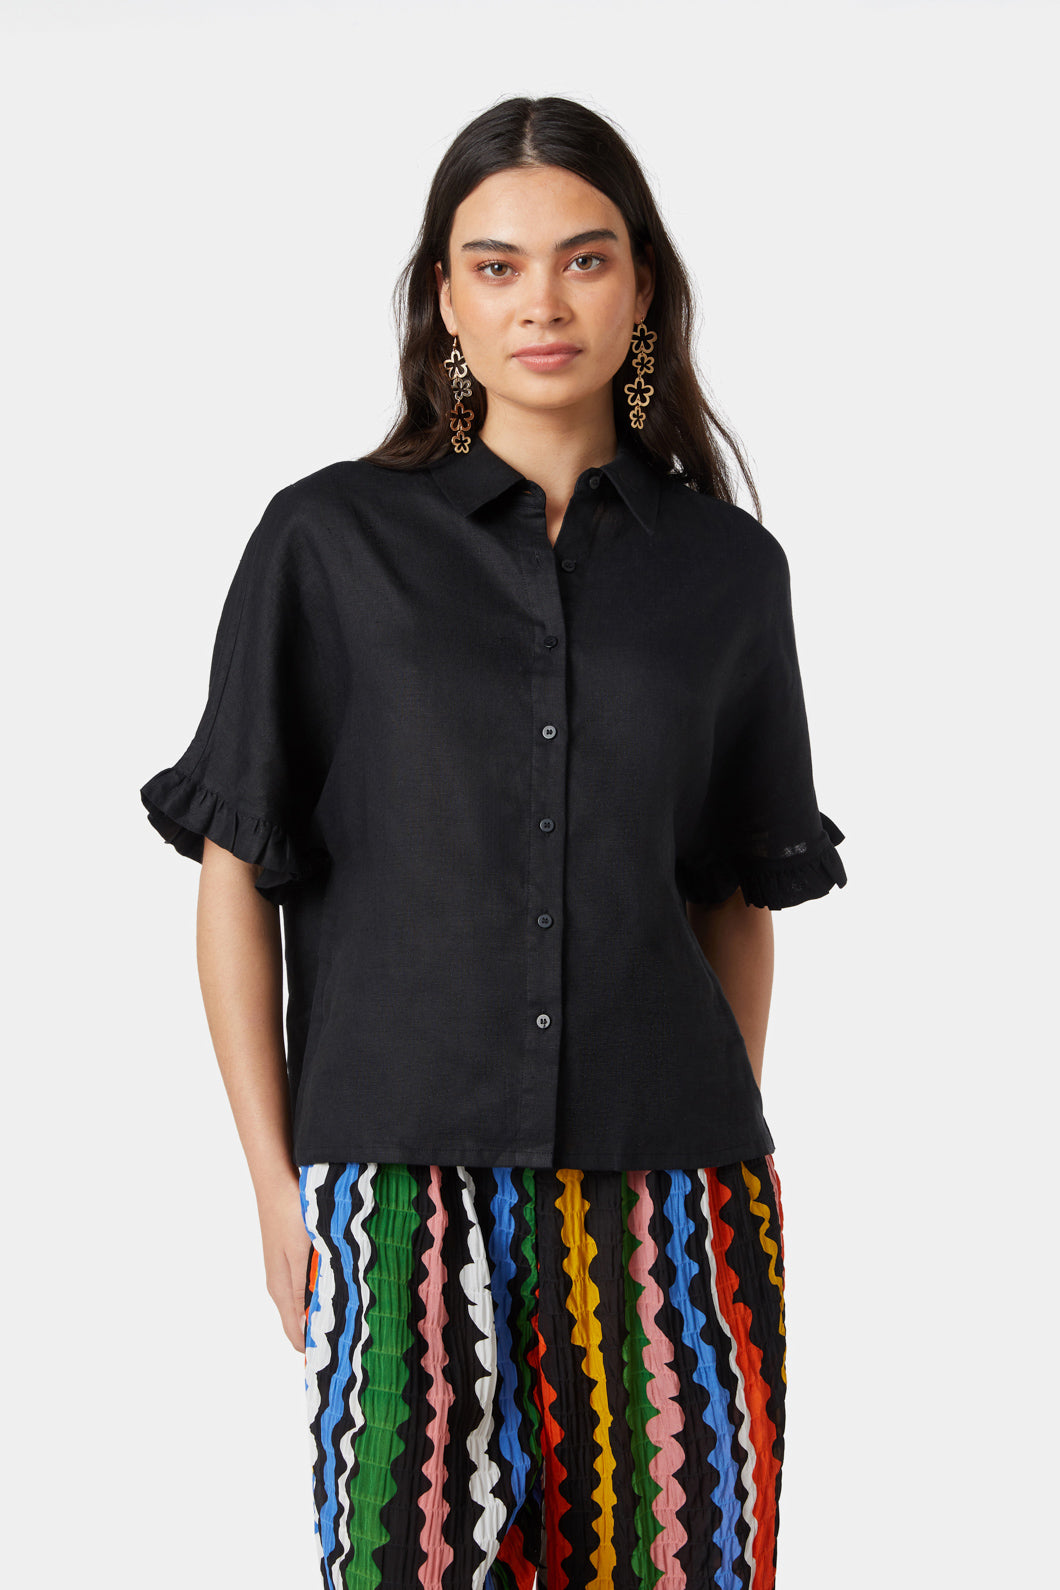 Women's 100% European Linen Short Sleeve Shirt  Short sleeve shirt women,  Linen short, Short sleeve shirt